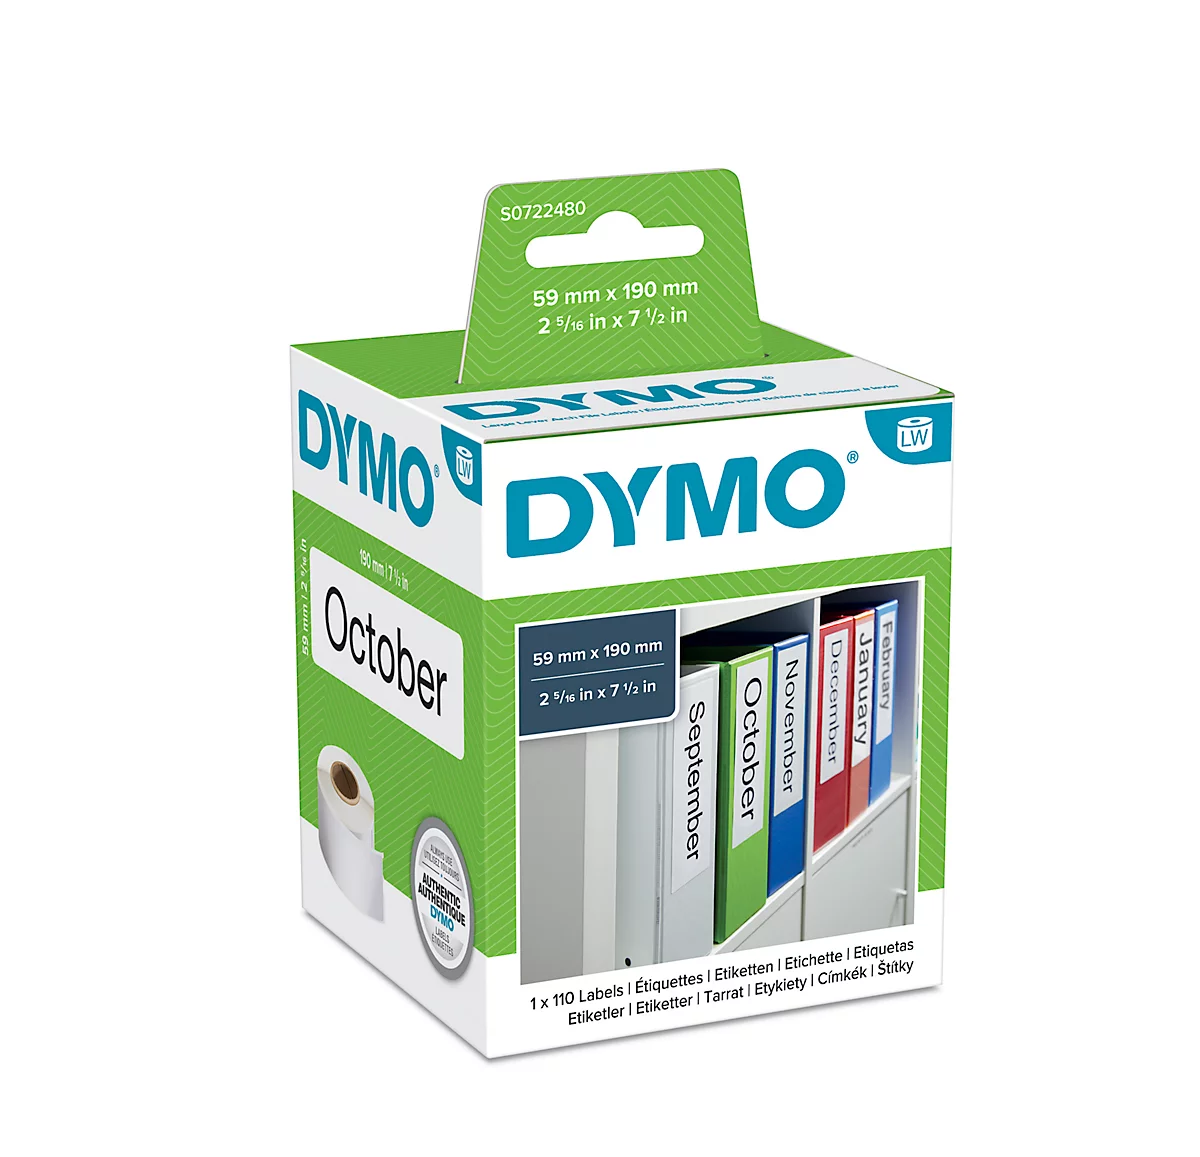 DYMO LabelWriter, Ordner-Etiketten, permanent, 59 x 190 mm, 110 Stück